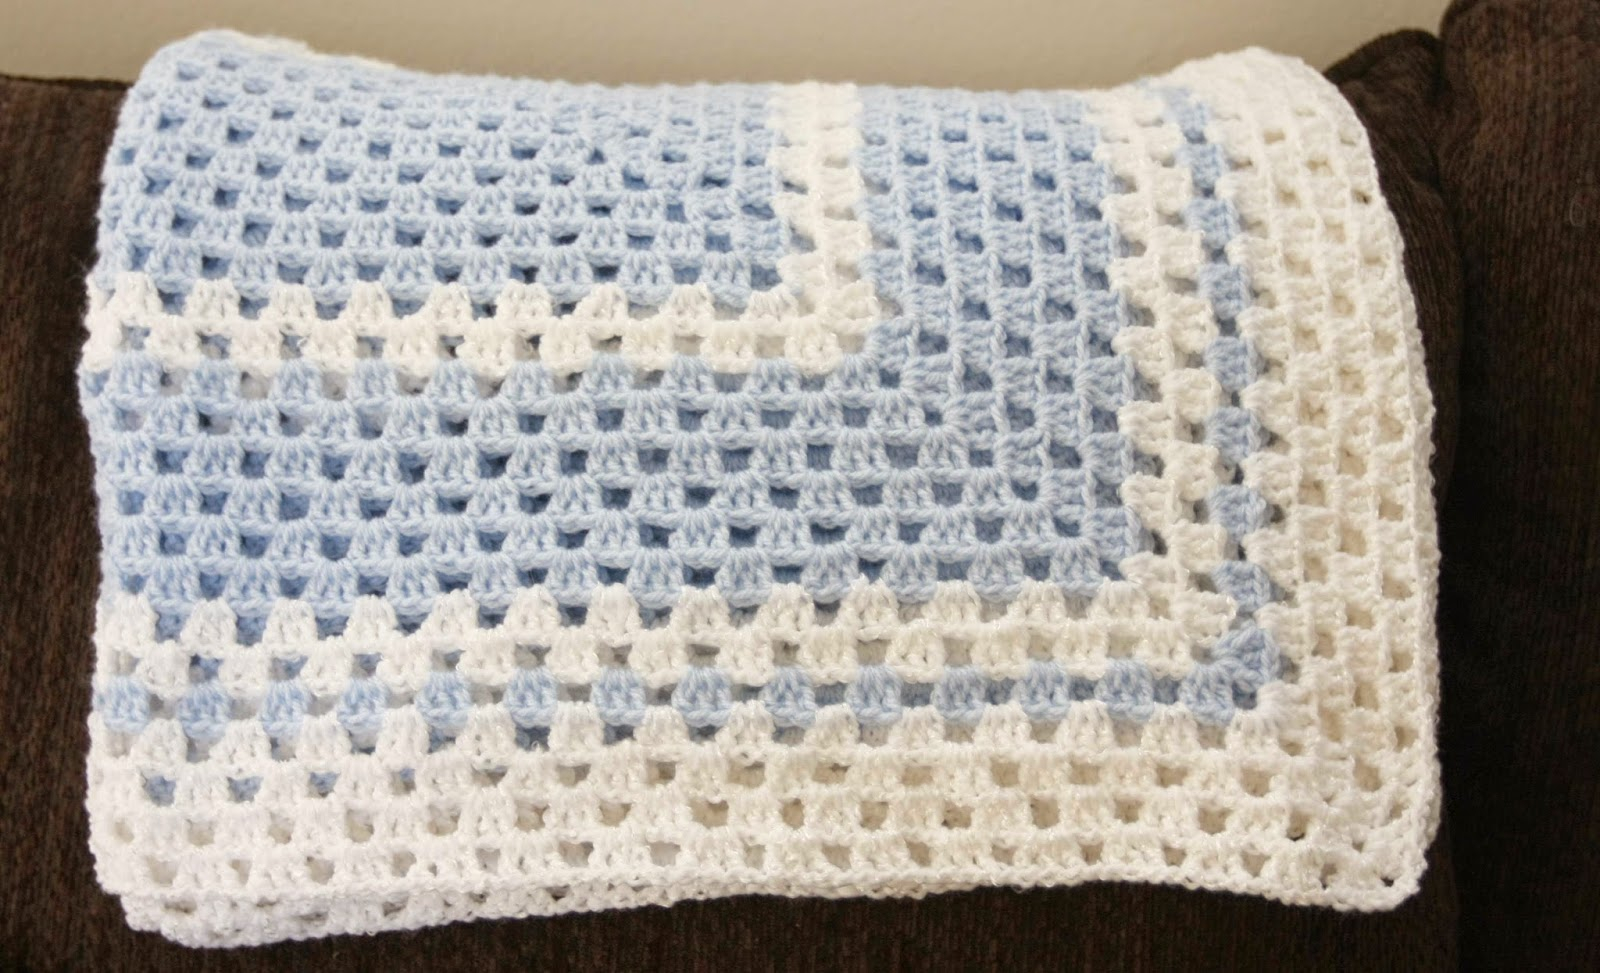 Easy Baby Blanket Crochet Patterns For Beginners Best Free Crochet Blanket Patterns For Beginners On Pinterest